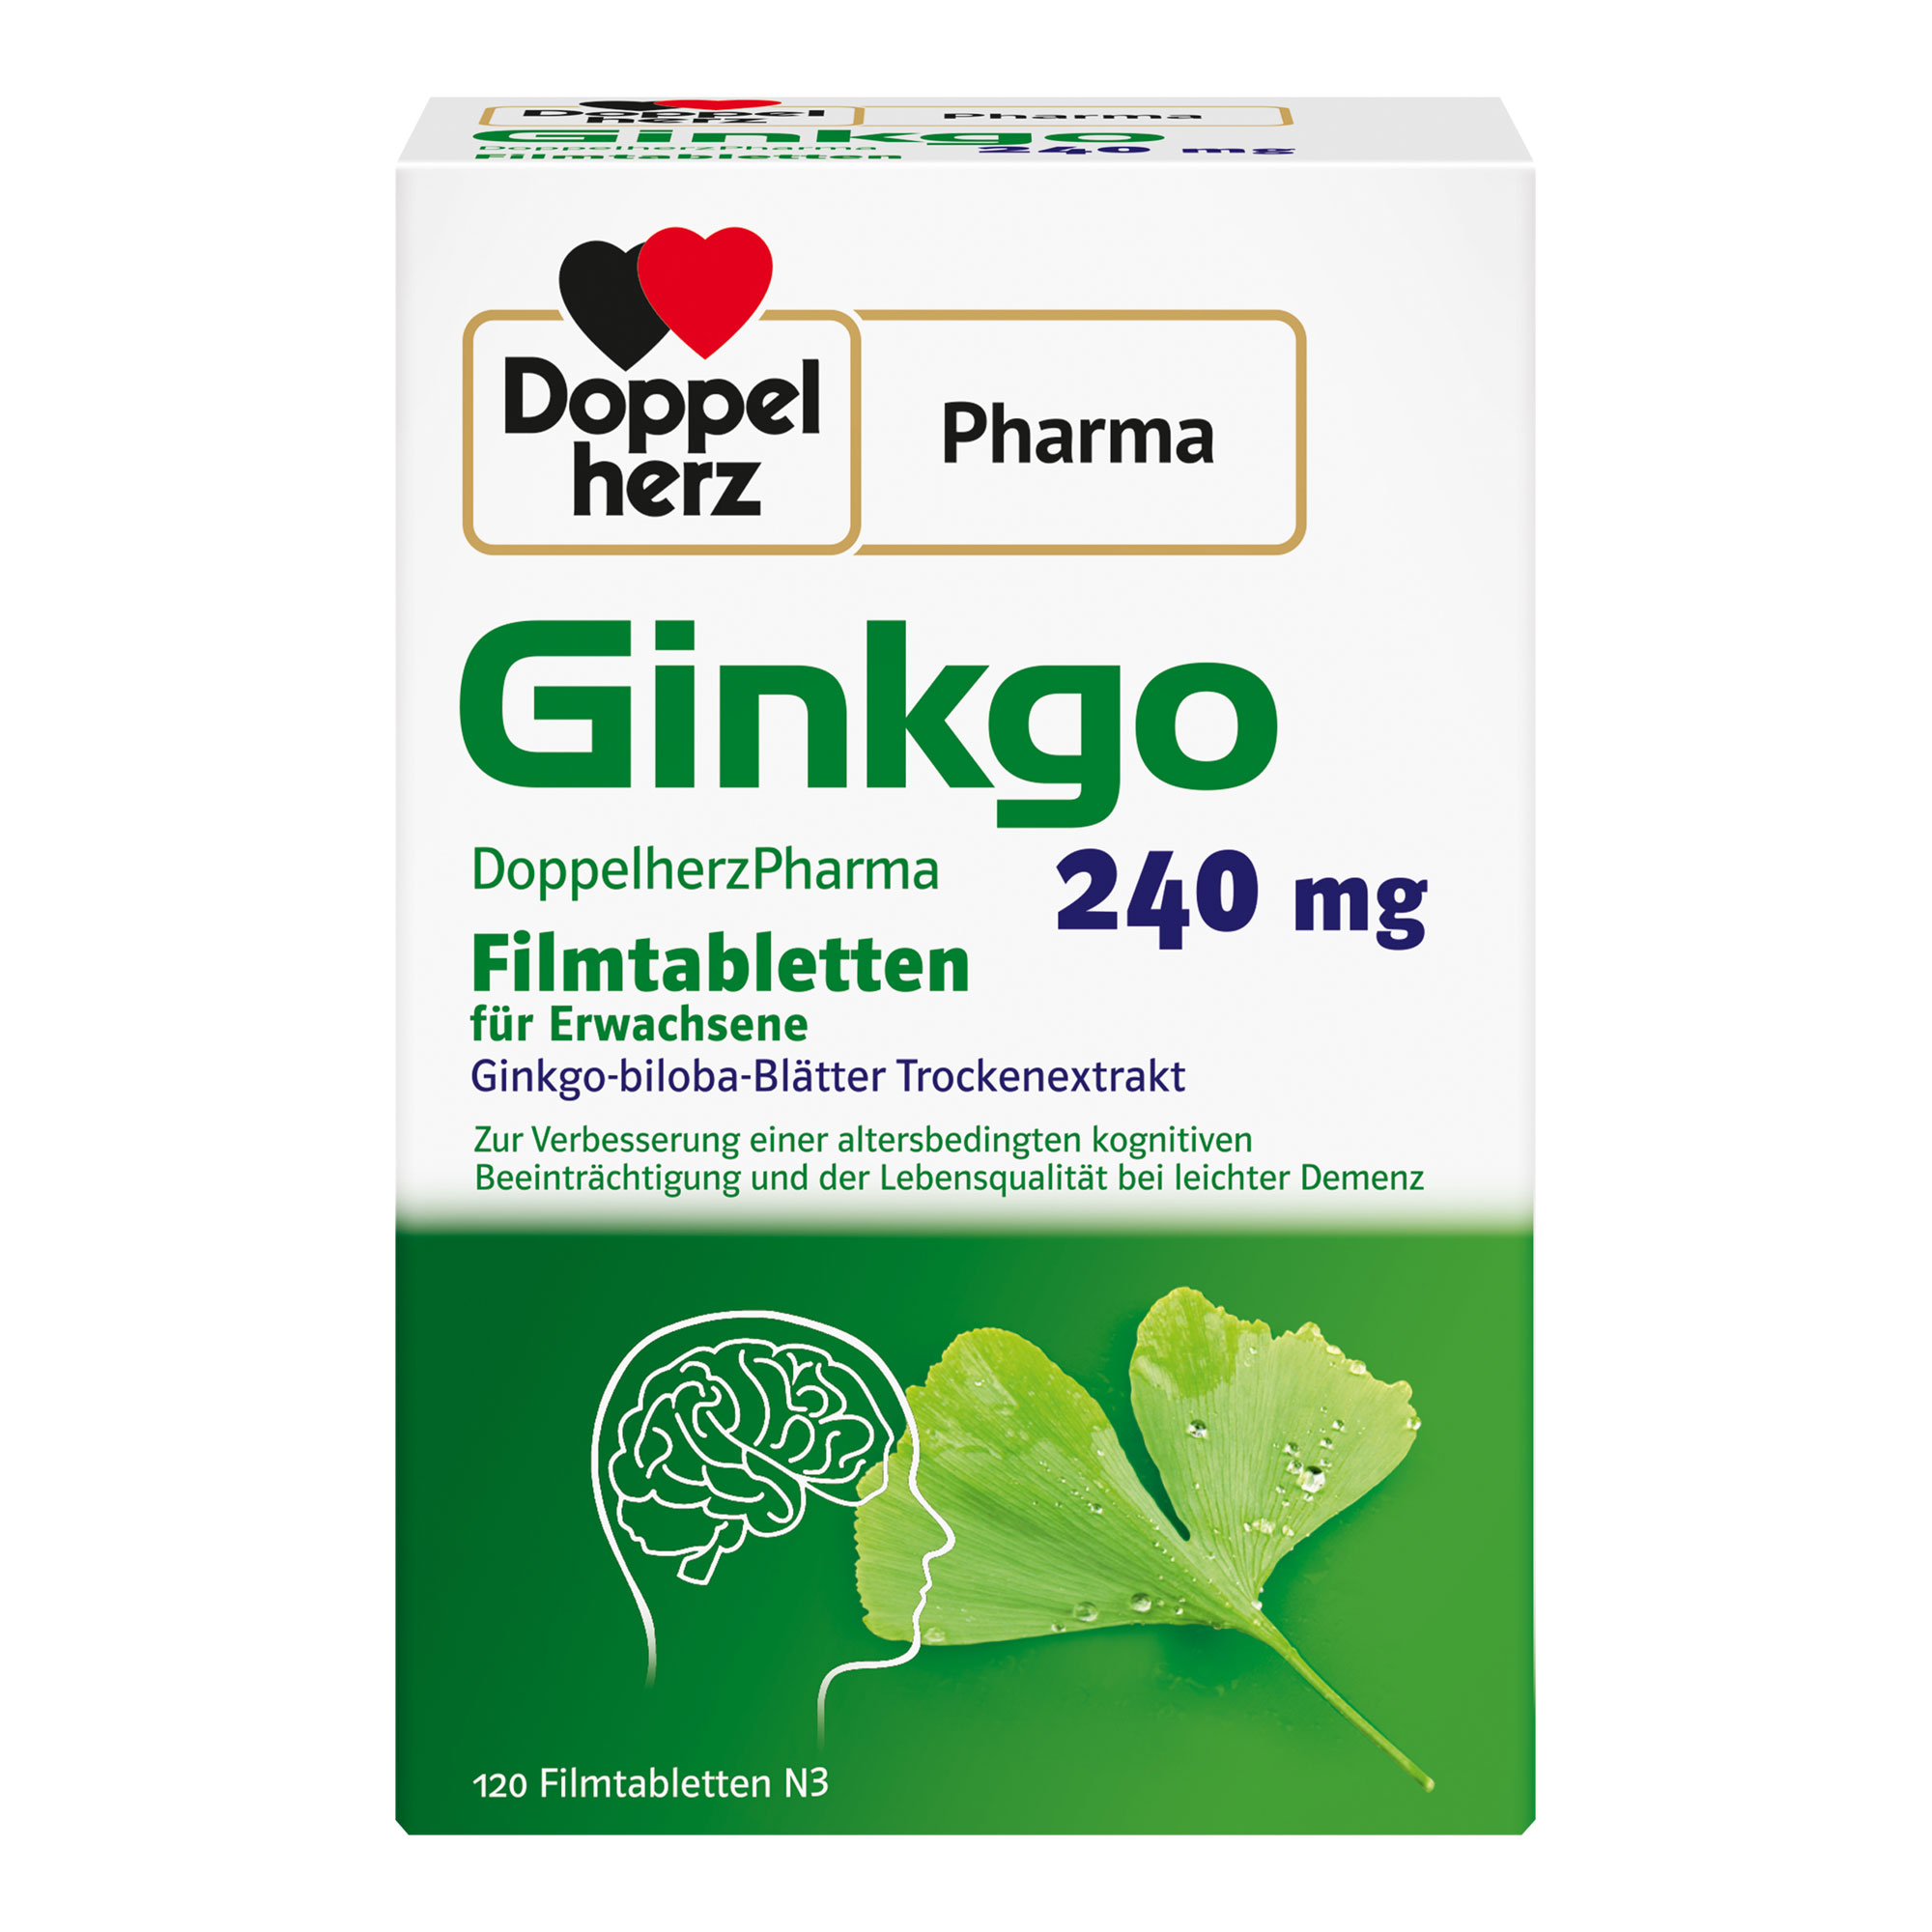 Pflanzliches Arzneimittel mit 240 mg Ginkgo-biloba-Blätter Trockenextrakt. Zur Anwendung bei leichter Demenz und altersbedingter kognitiver Beeinträchtigung.